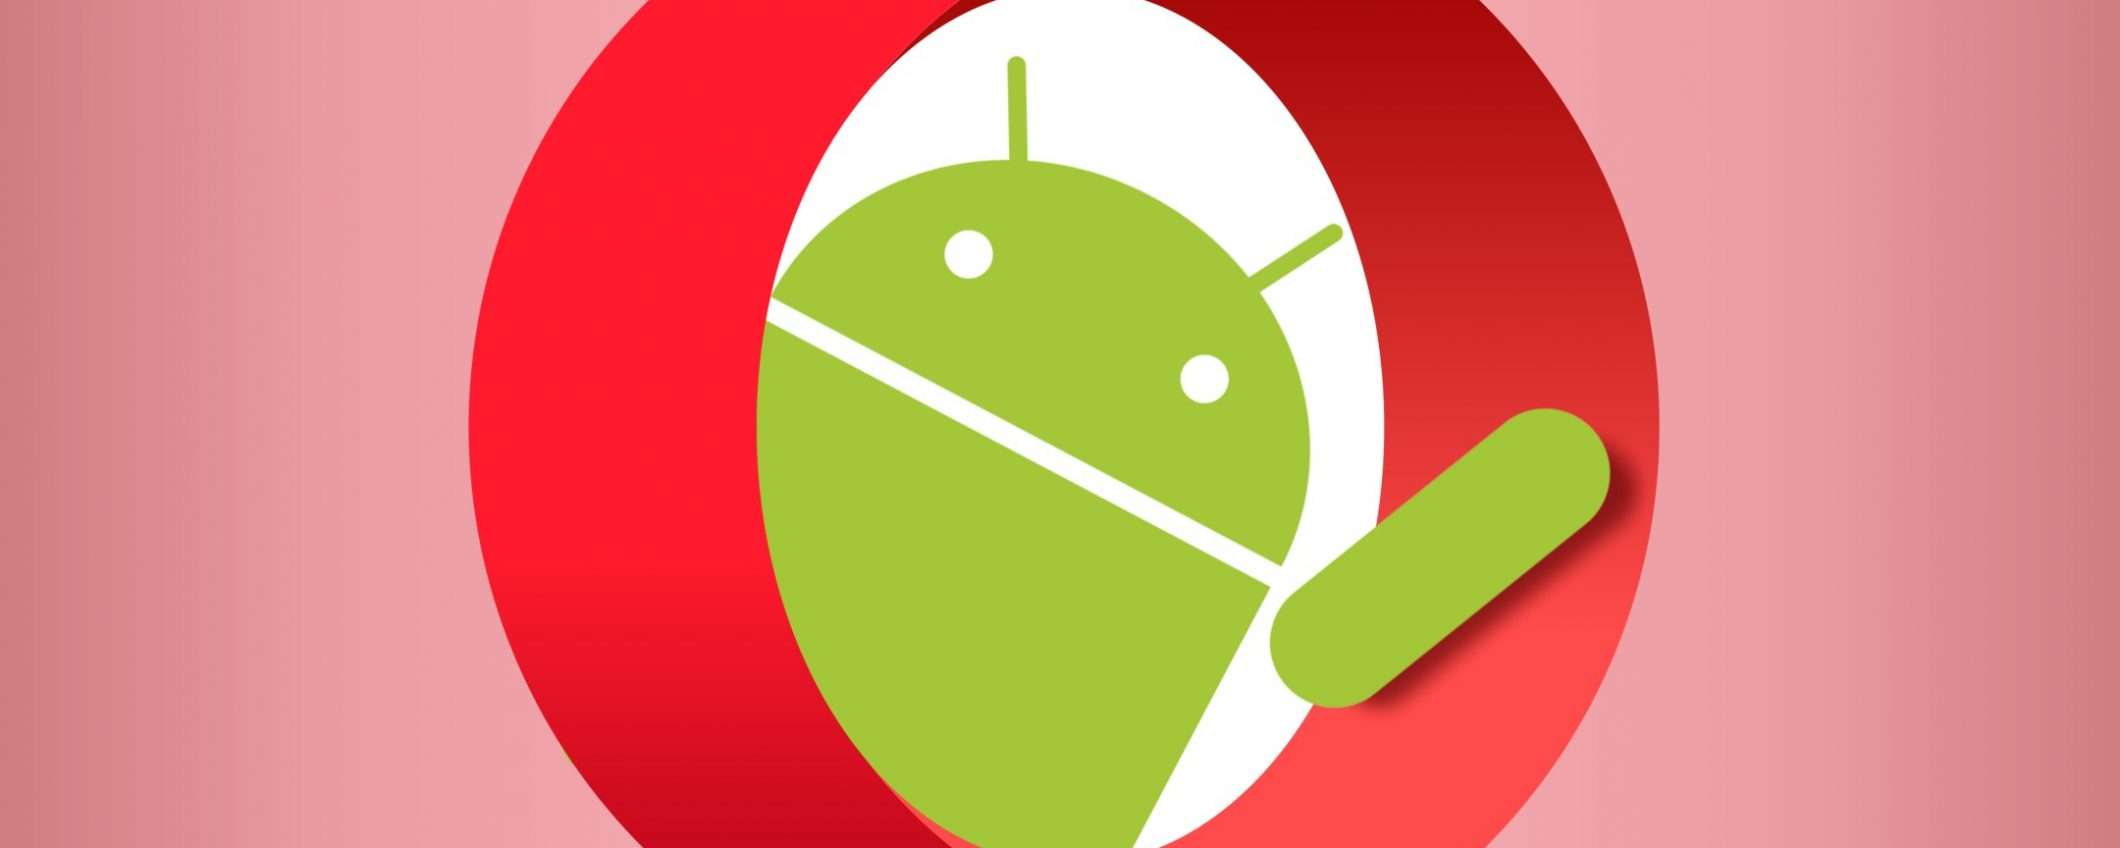 Opera per Android gestisce i cookie senza click